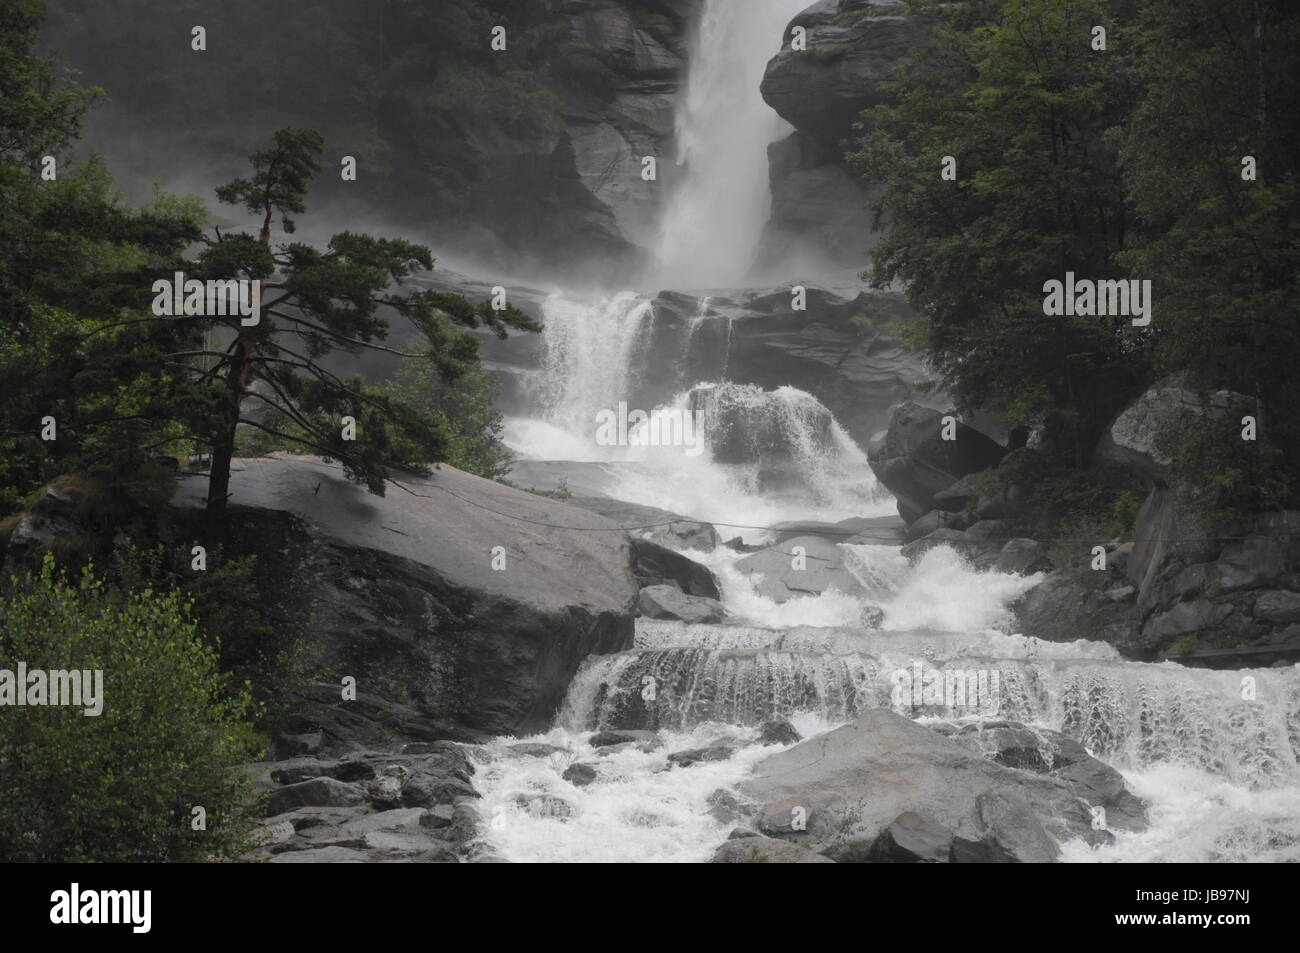 La cascata di Noasca / PIEMONTE Foto stock - Alamy